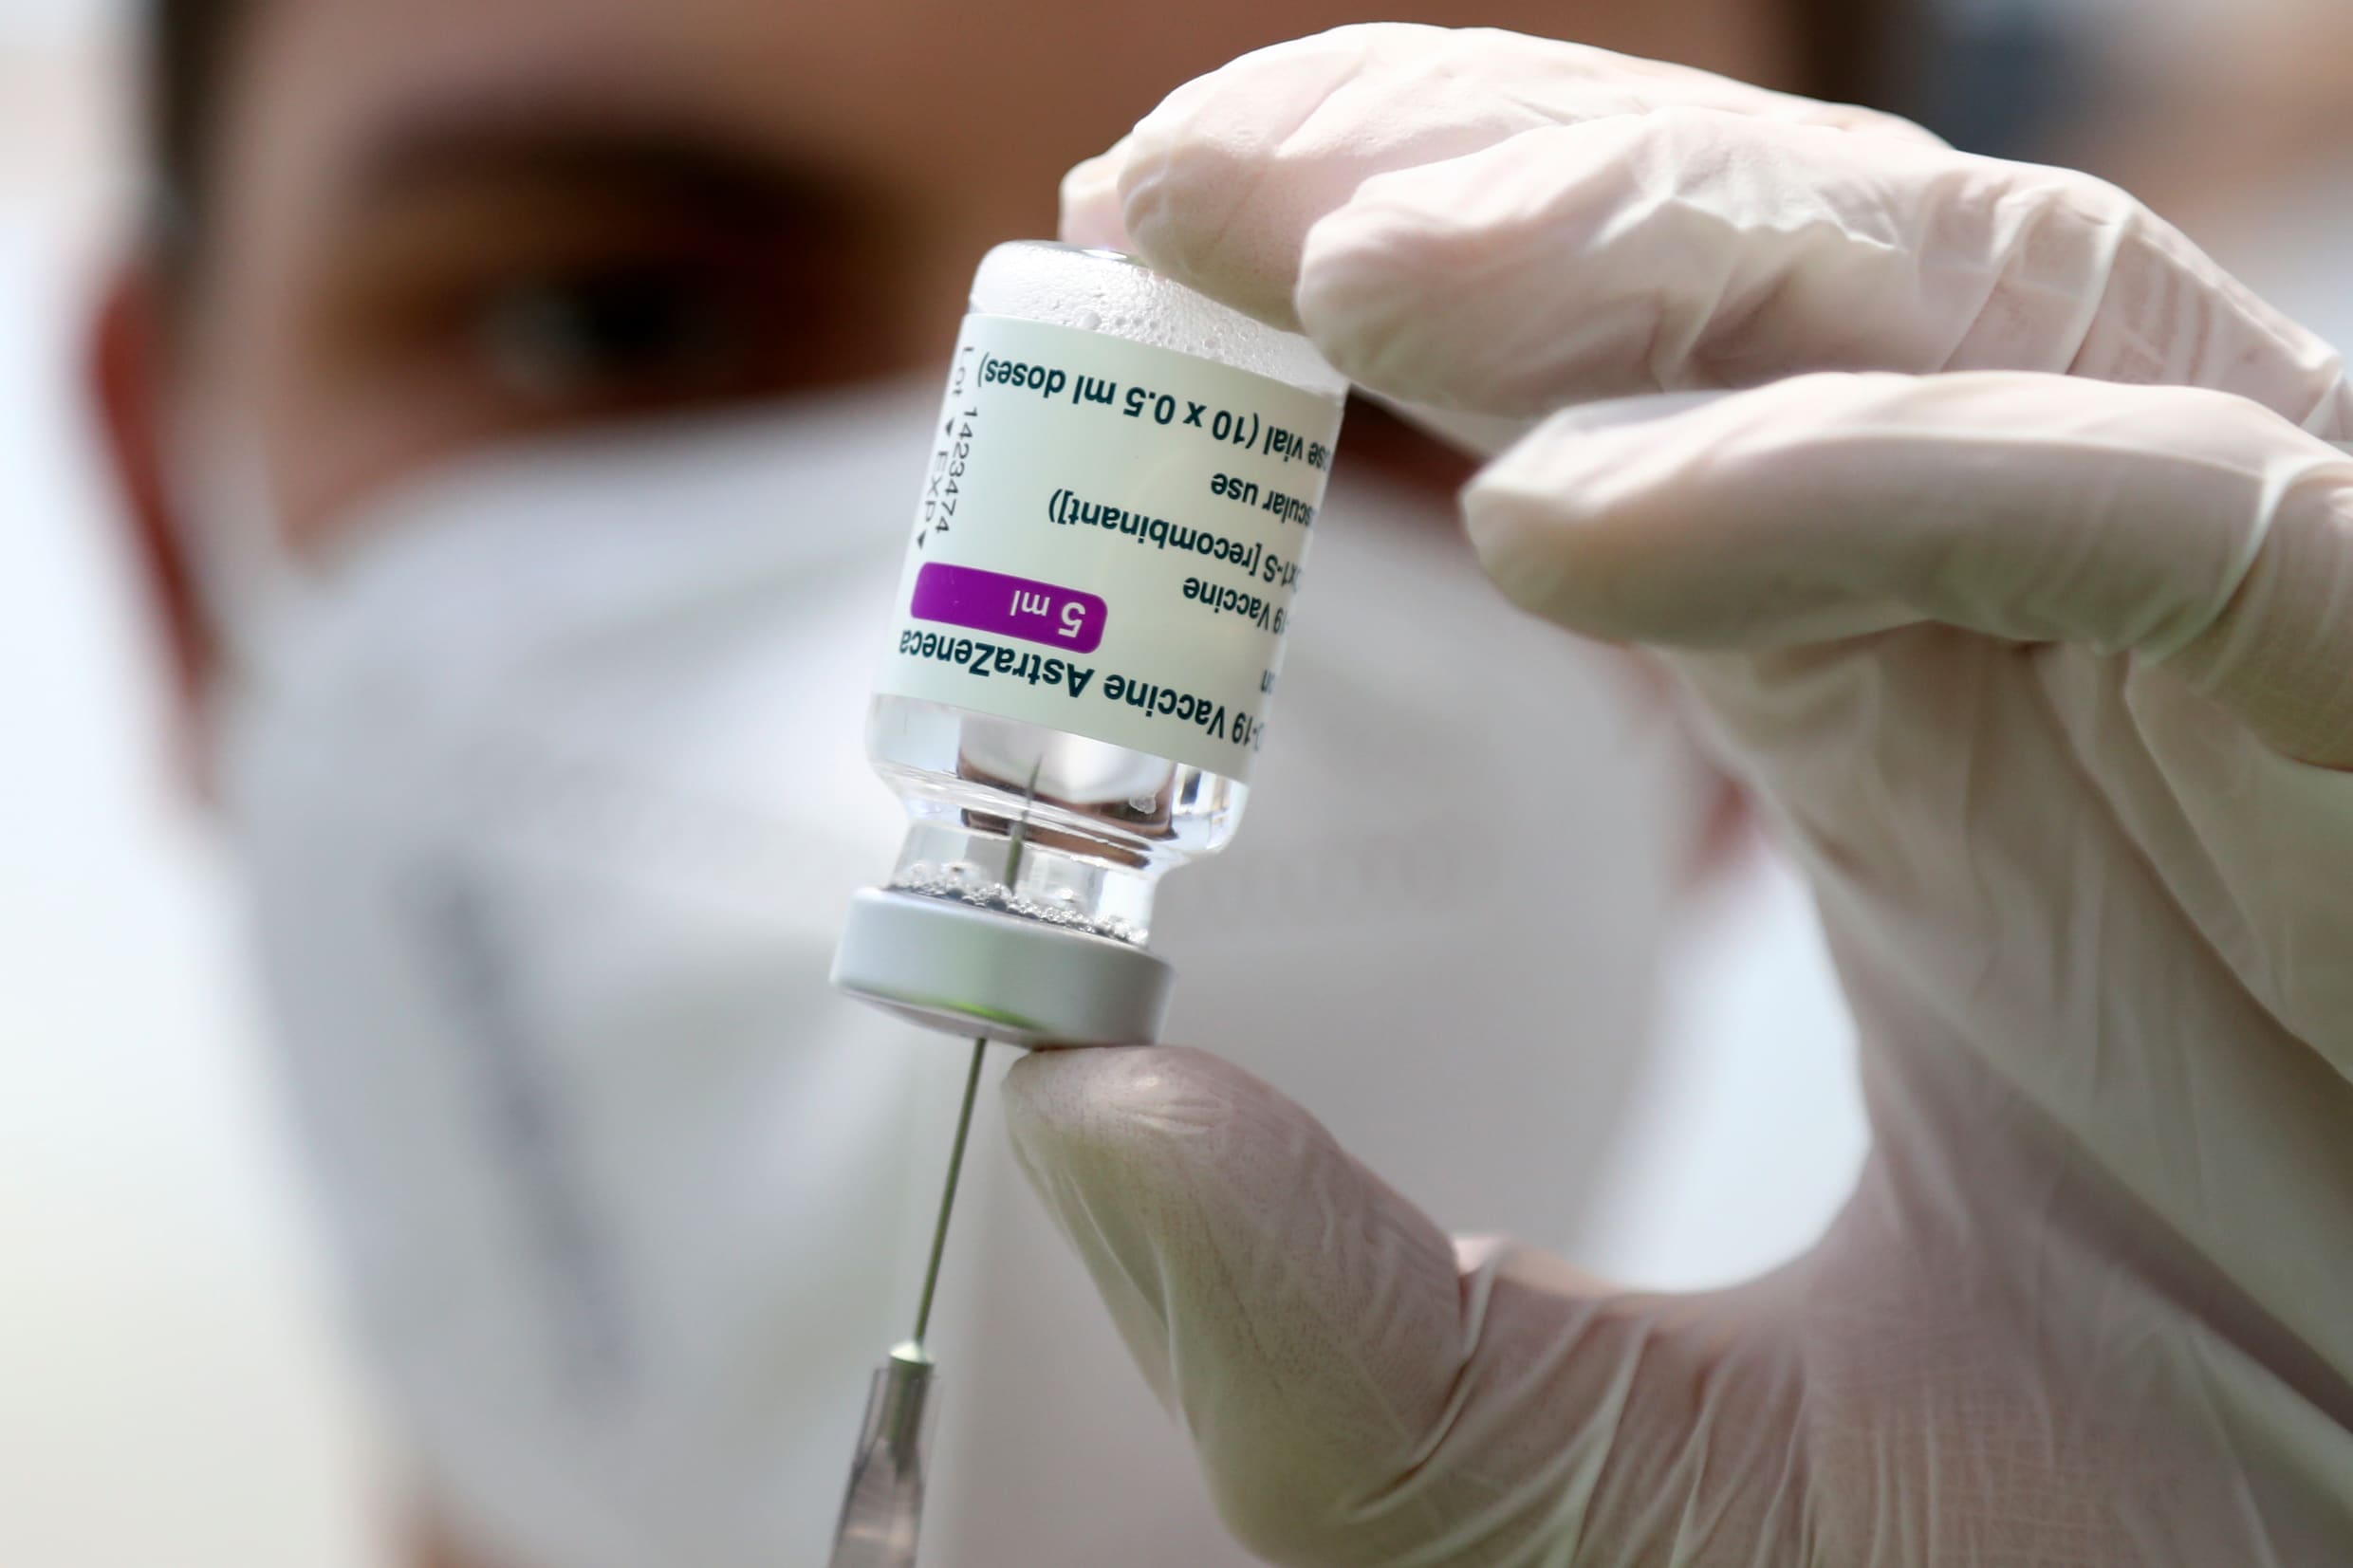 AstraZeneca levert bijna 260.000 vaccins in één keer, belangrijke stap voor Belgische campagne